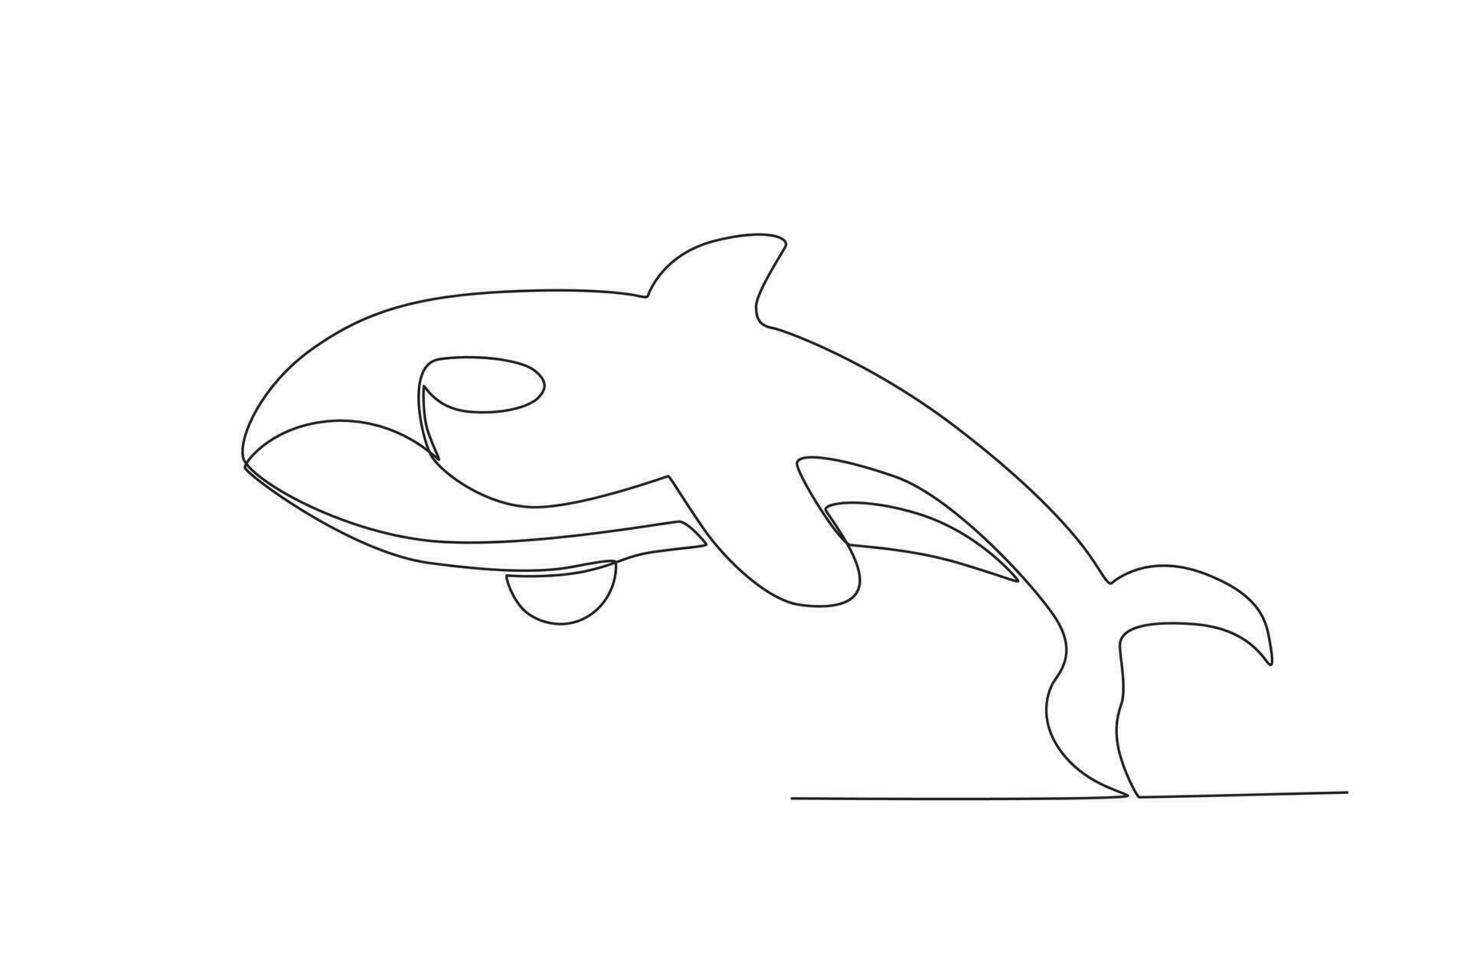 soltero uno línea dibujo de un feroz ballena. continuo línea dibujar diseño gráfico vector ilustración.